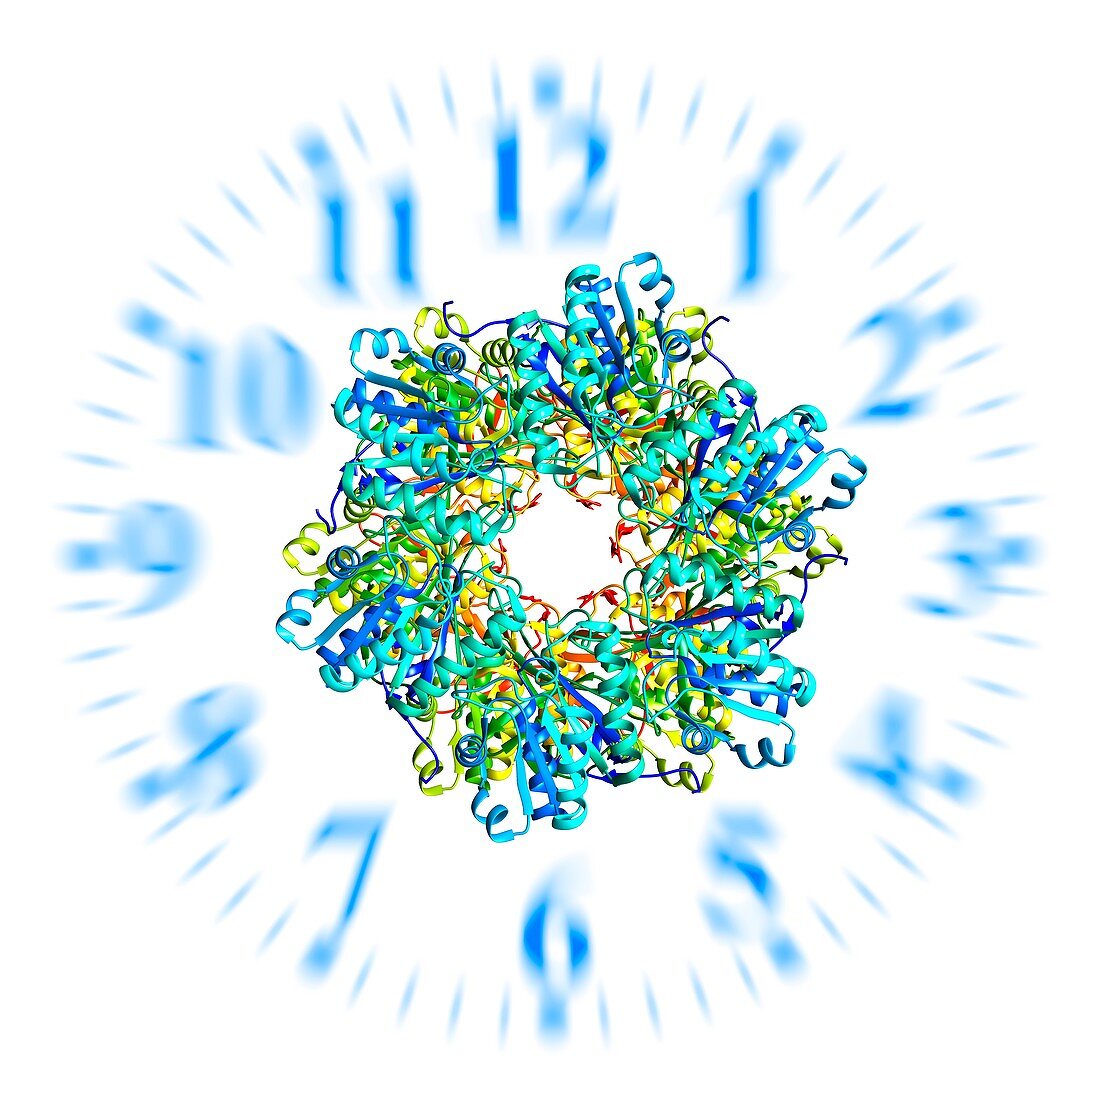 Circadian clock molecule, illustration